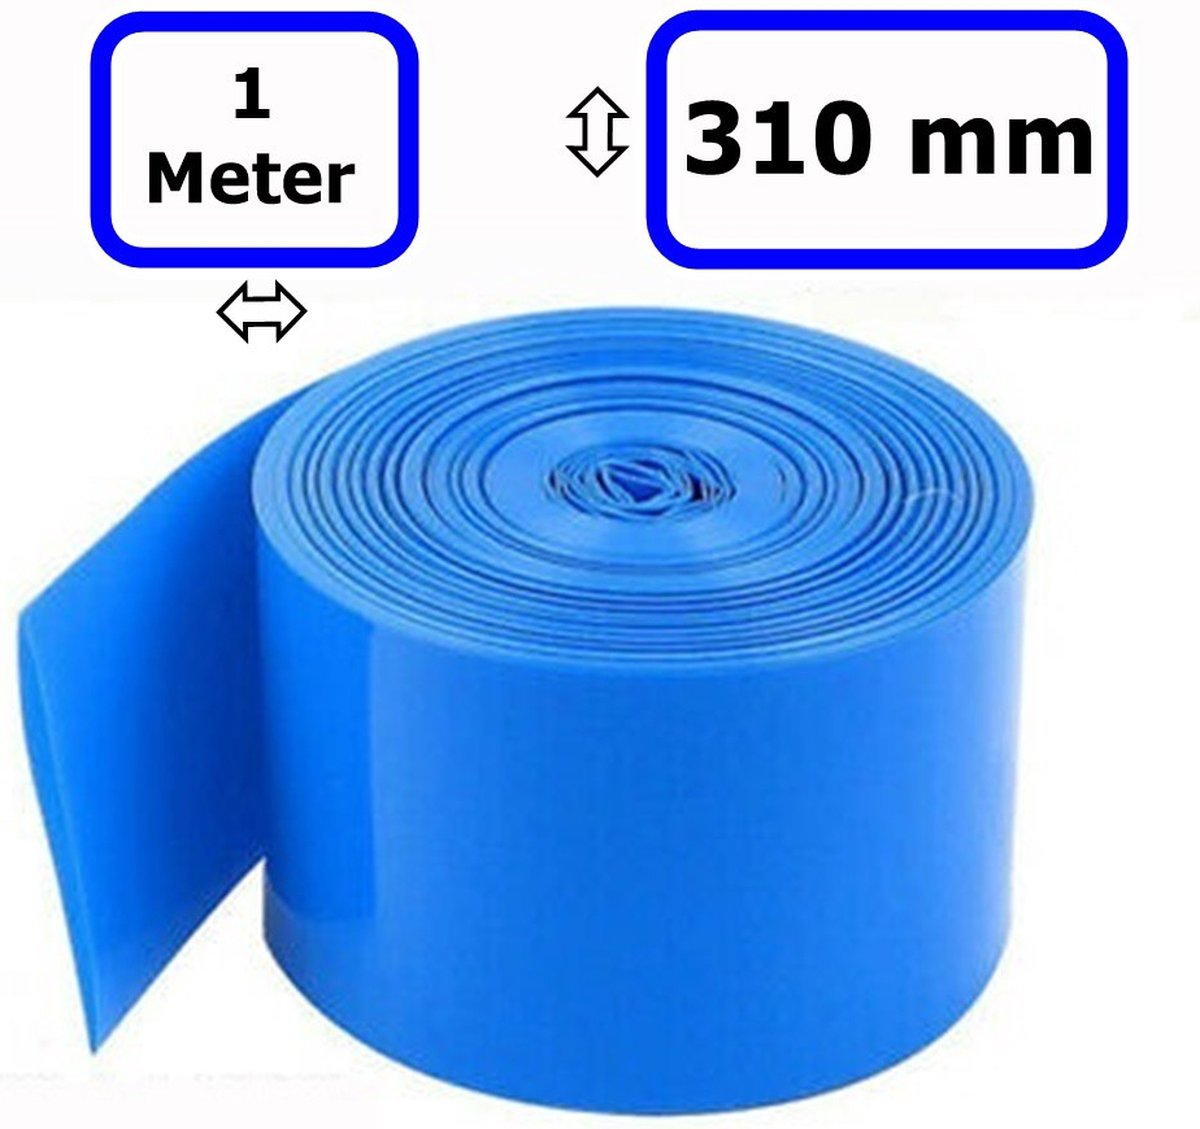 1 Meter - 310mm BatteryPack PVC Krimpkous Tube Wrap